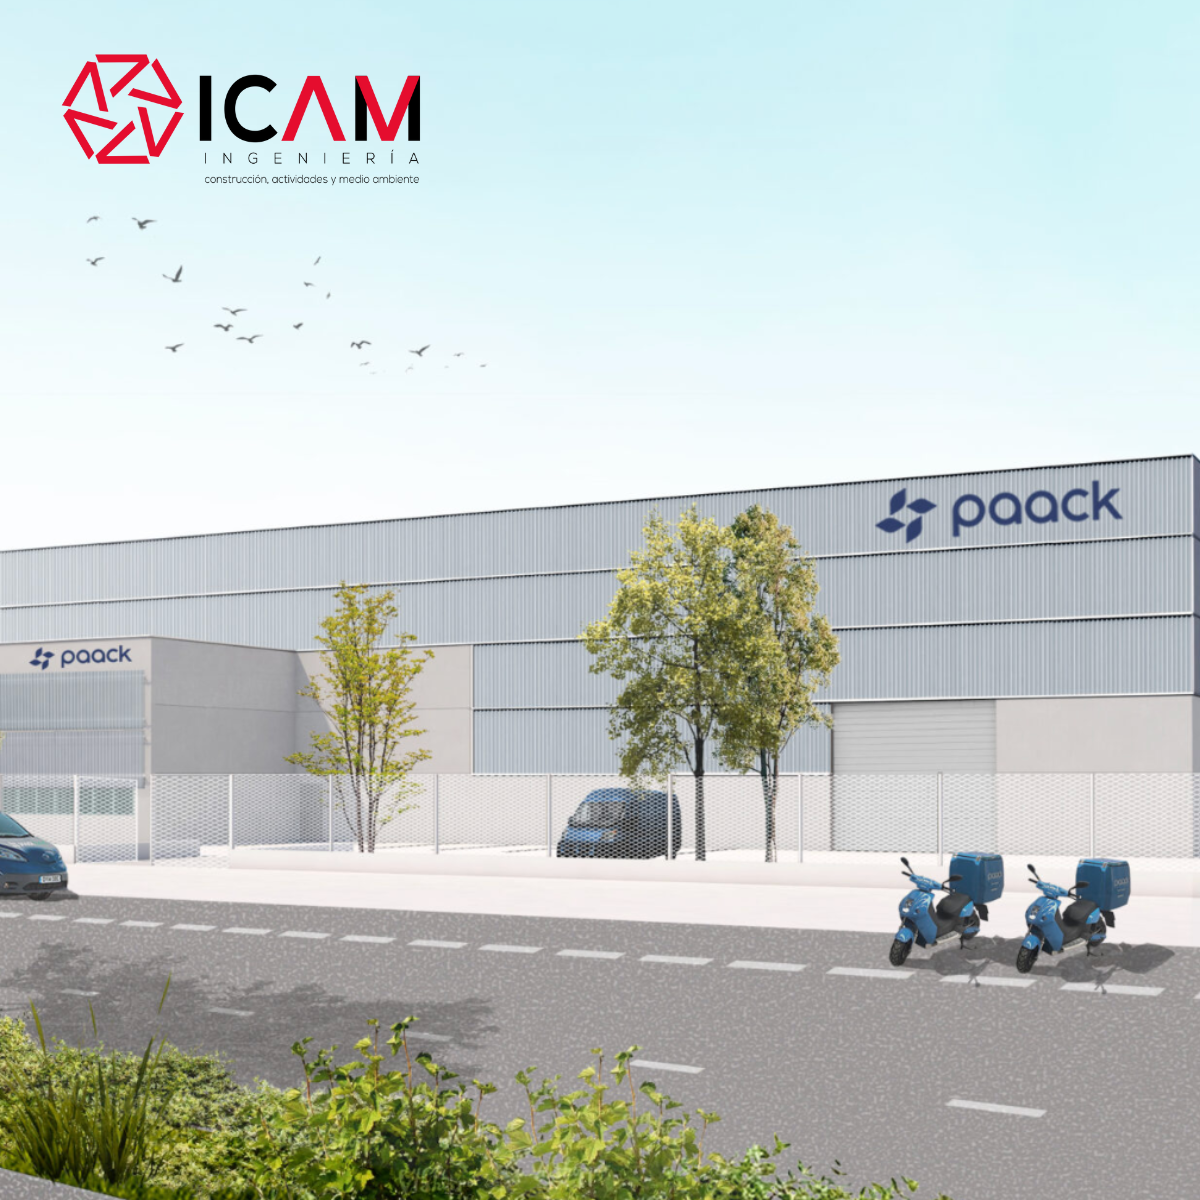 paack abre su nuevo centro logístico en valencia en el poligono industrial de Riba roja gracias a Icam sl